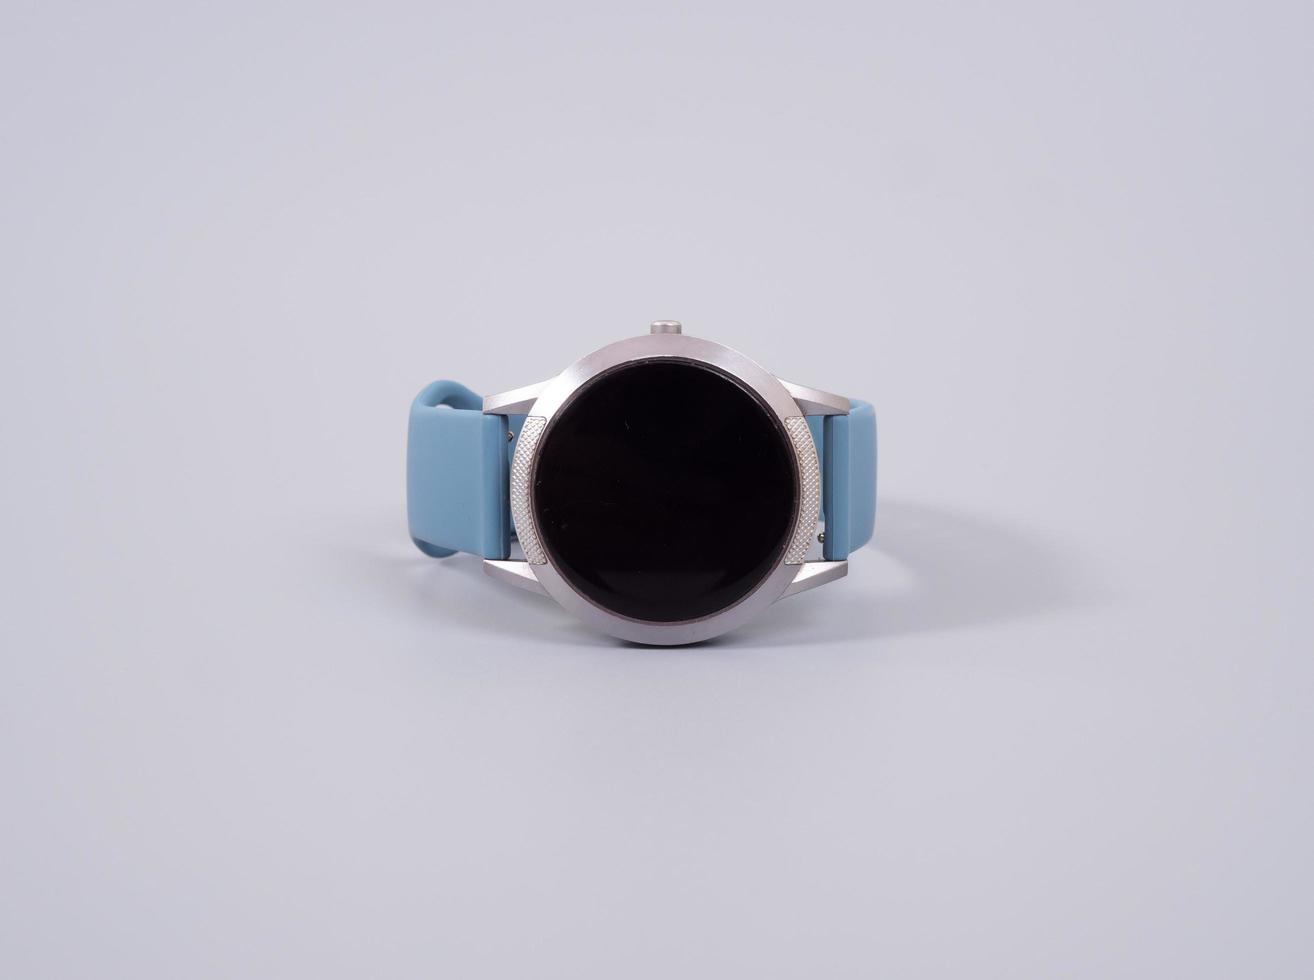 smartwatch placé sur une table grise rugueuse photo